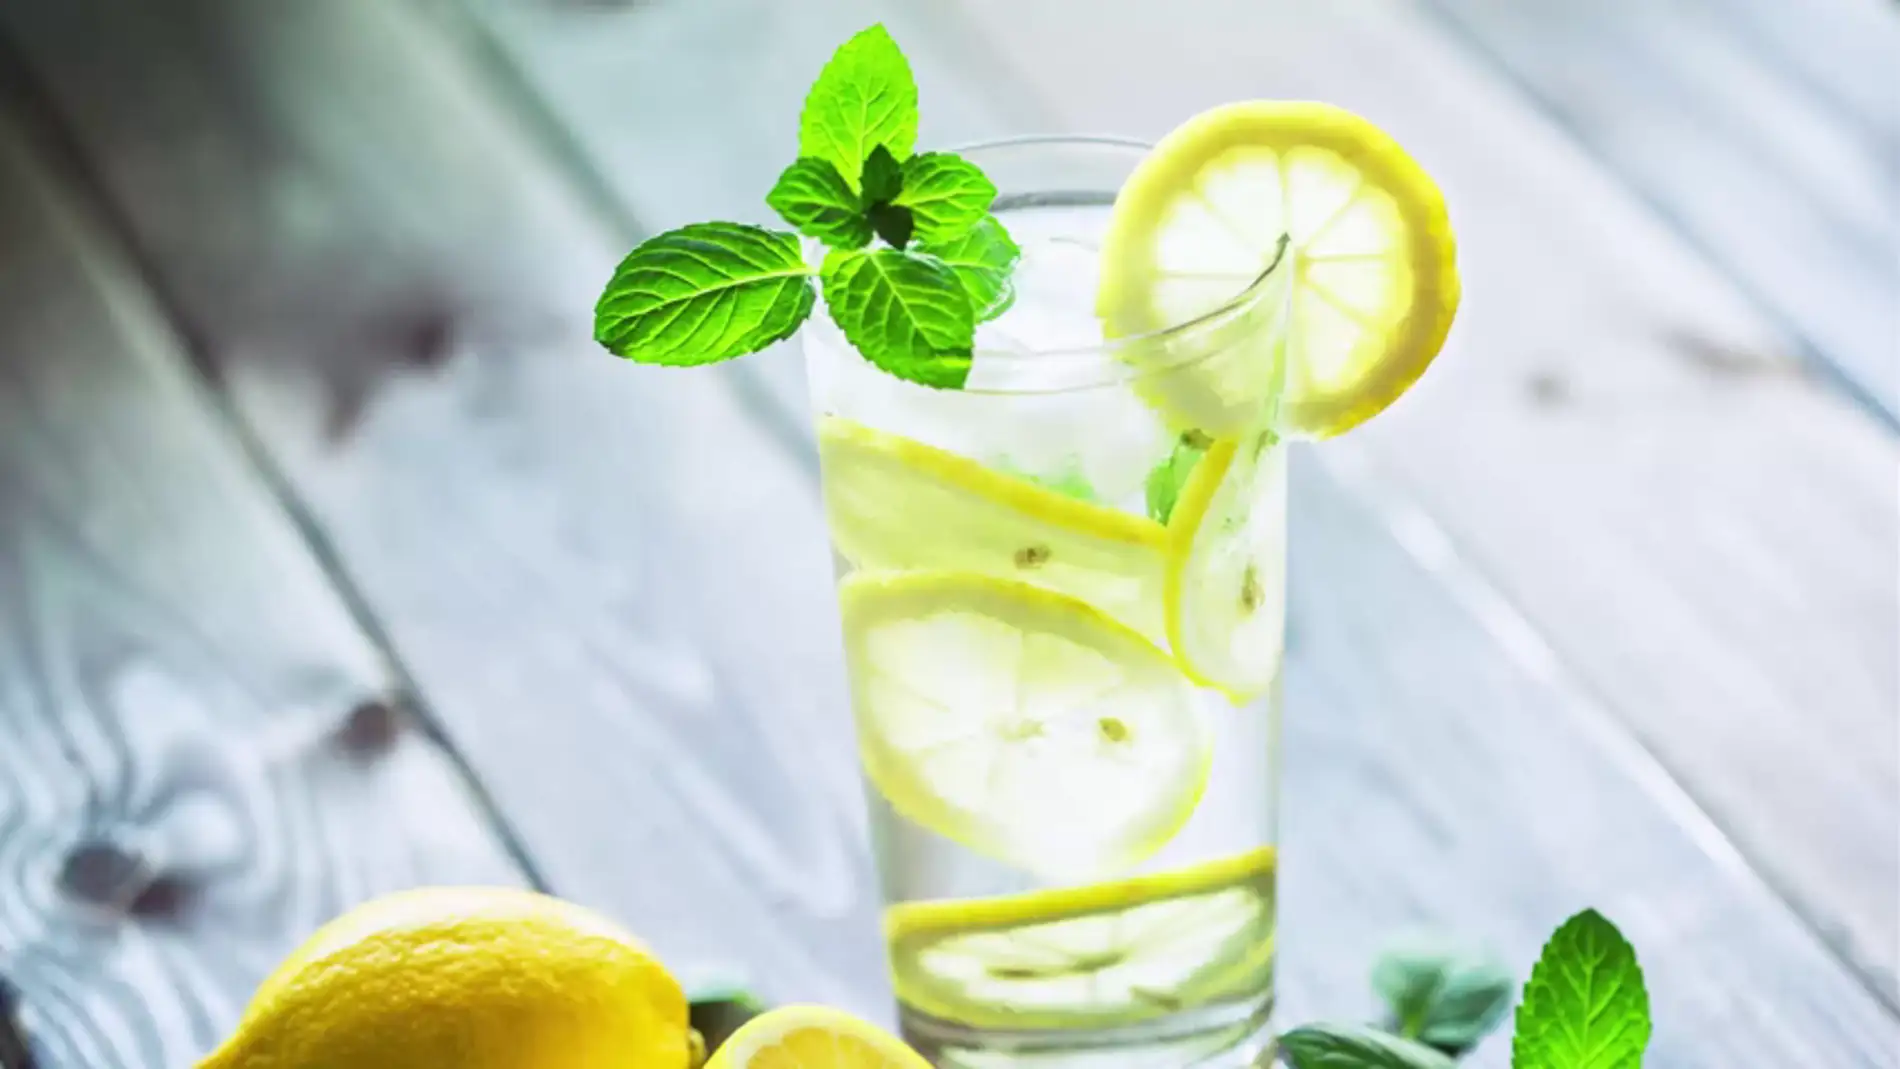 Por qué no deberías añadirle una rodaja de limón a tu bebida nunca más